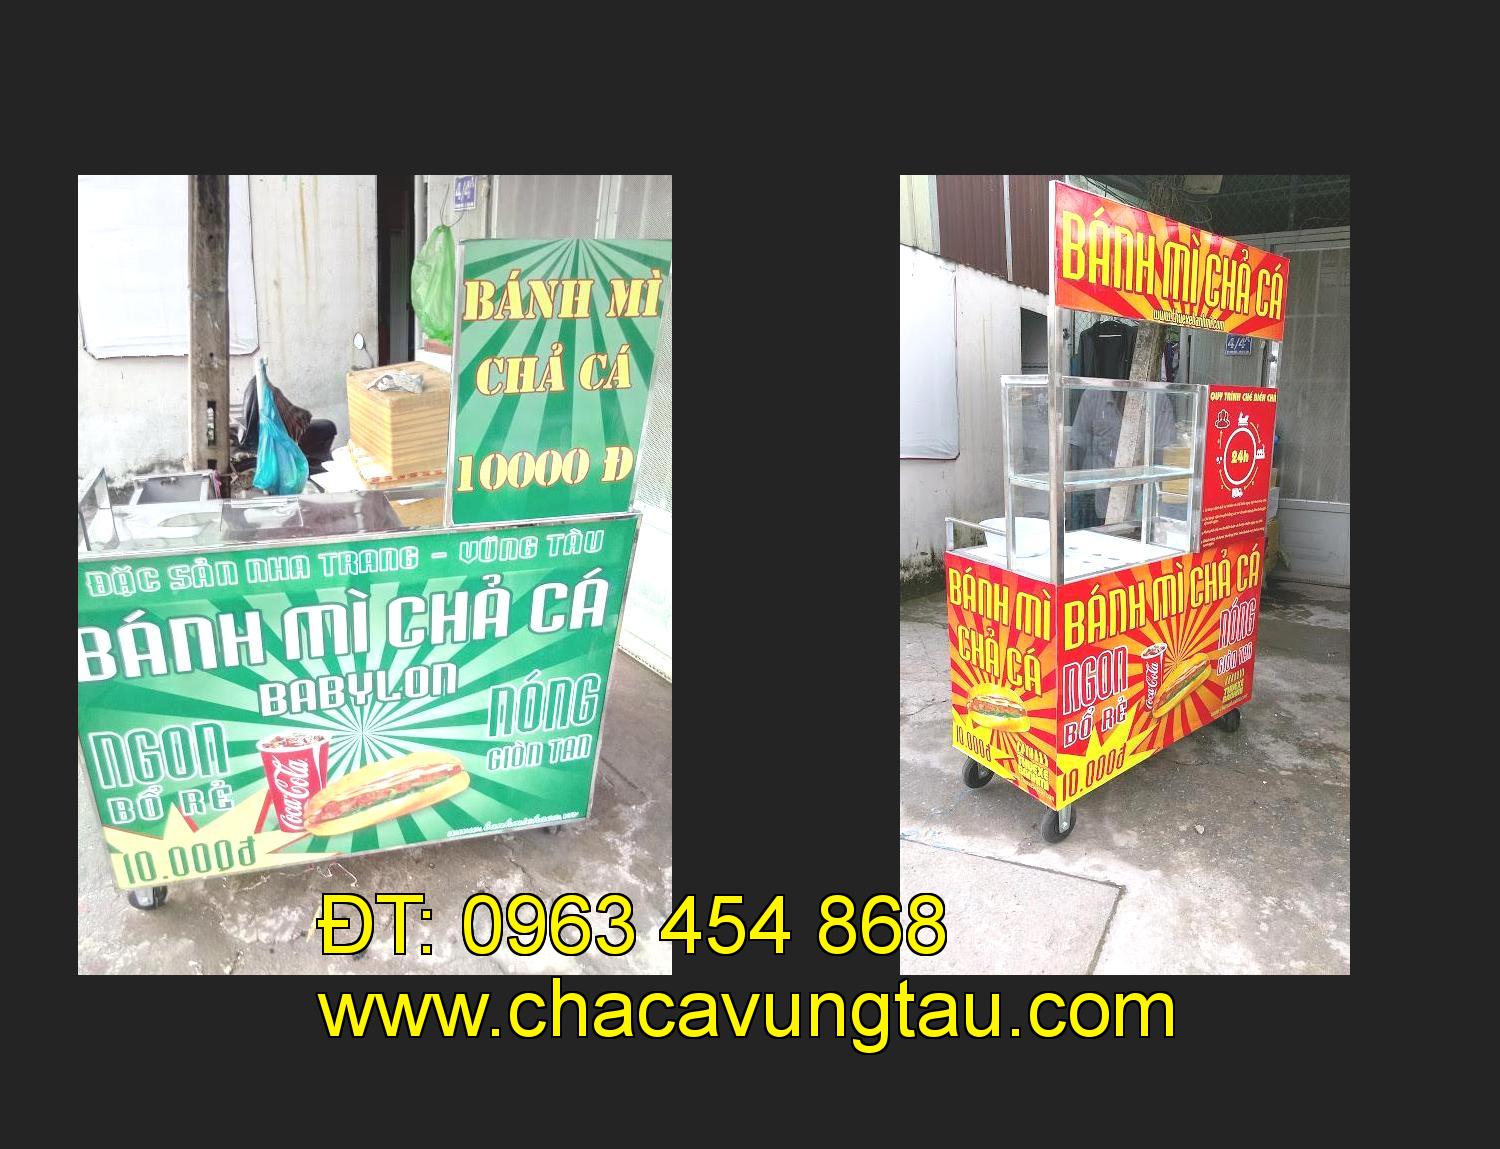 xe bánh mì chả cá inox tại tỉnh Cần Thơ